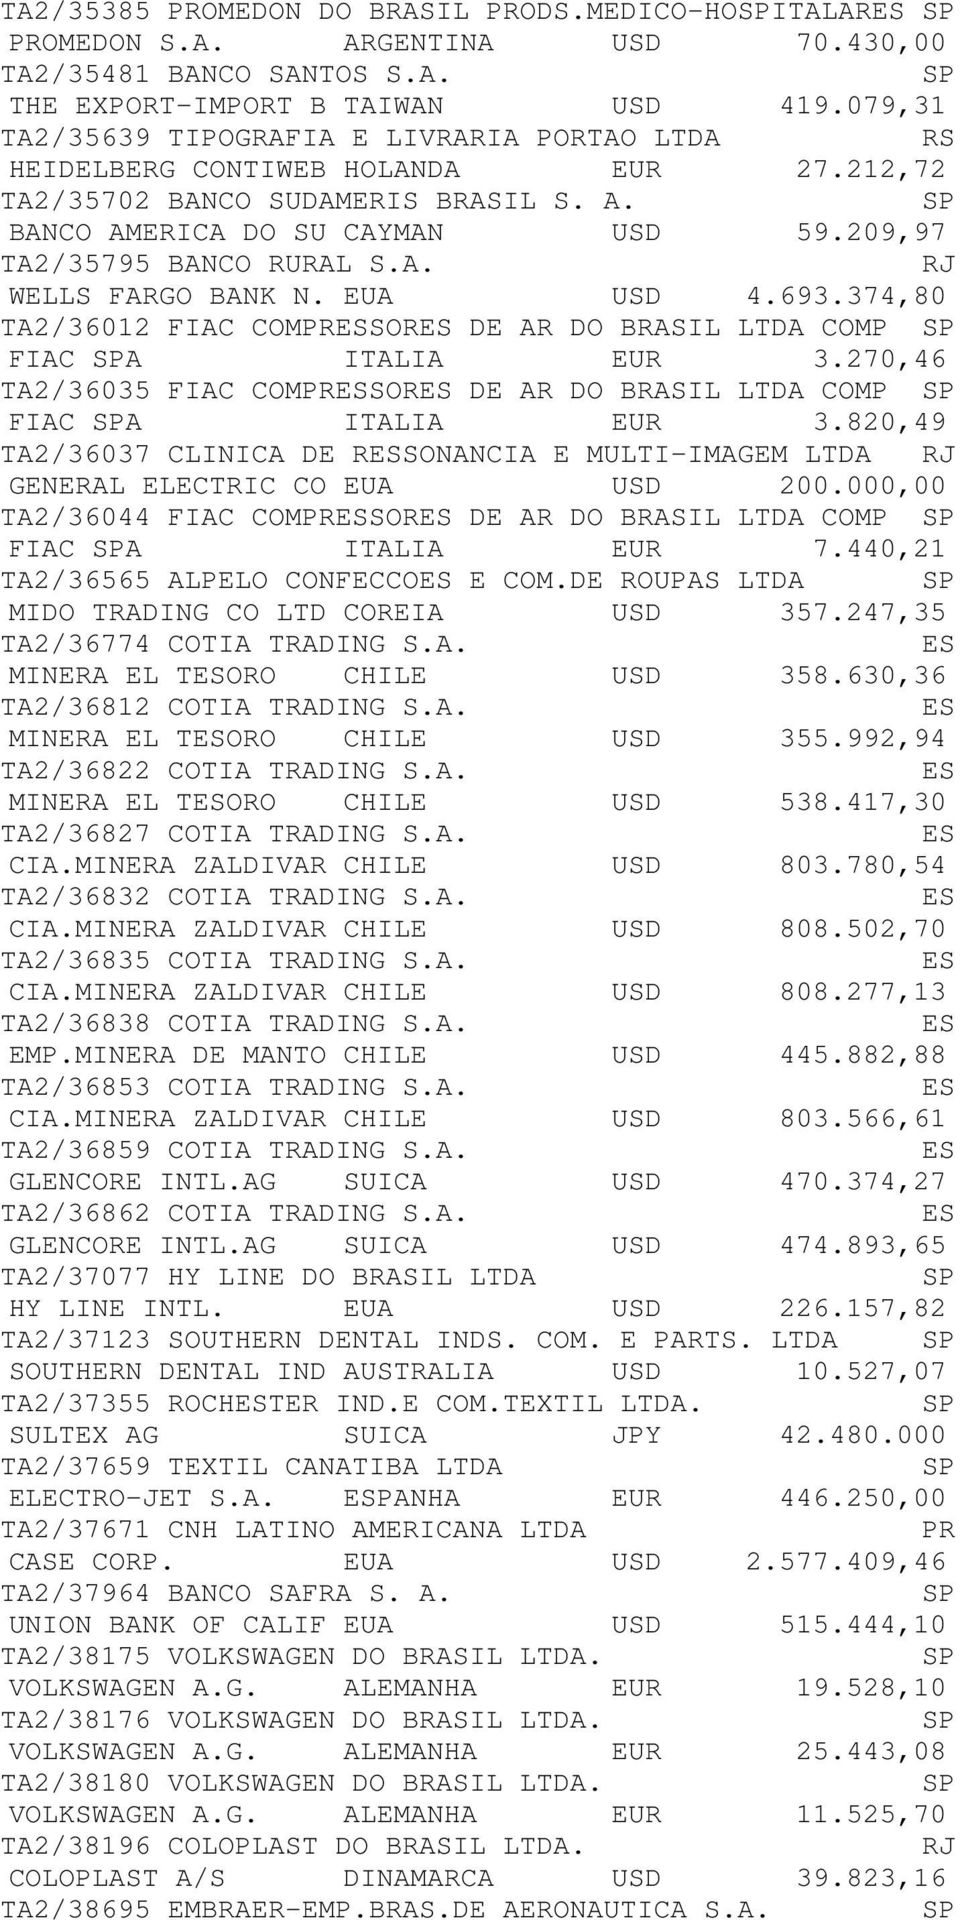 EUA USD 4.693.374,80 TA2/36012 FIAC COMESSORES DE AR DO BRASIL LTDA COMP FIAC A ITALIA EUR 3.270,46 TA2/36035 FIAC COMESSORES DE AR DO BRASIL LTDA COMP FIAC A ITALIA EUR 3.